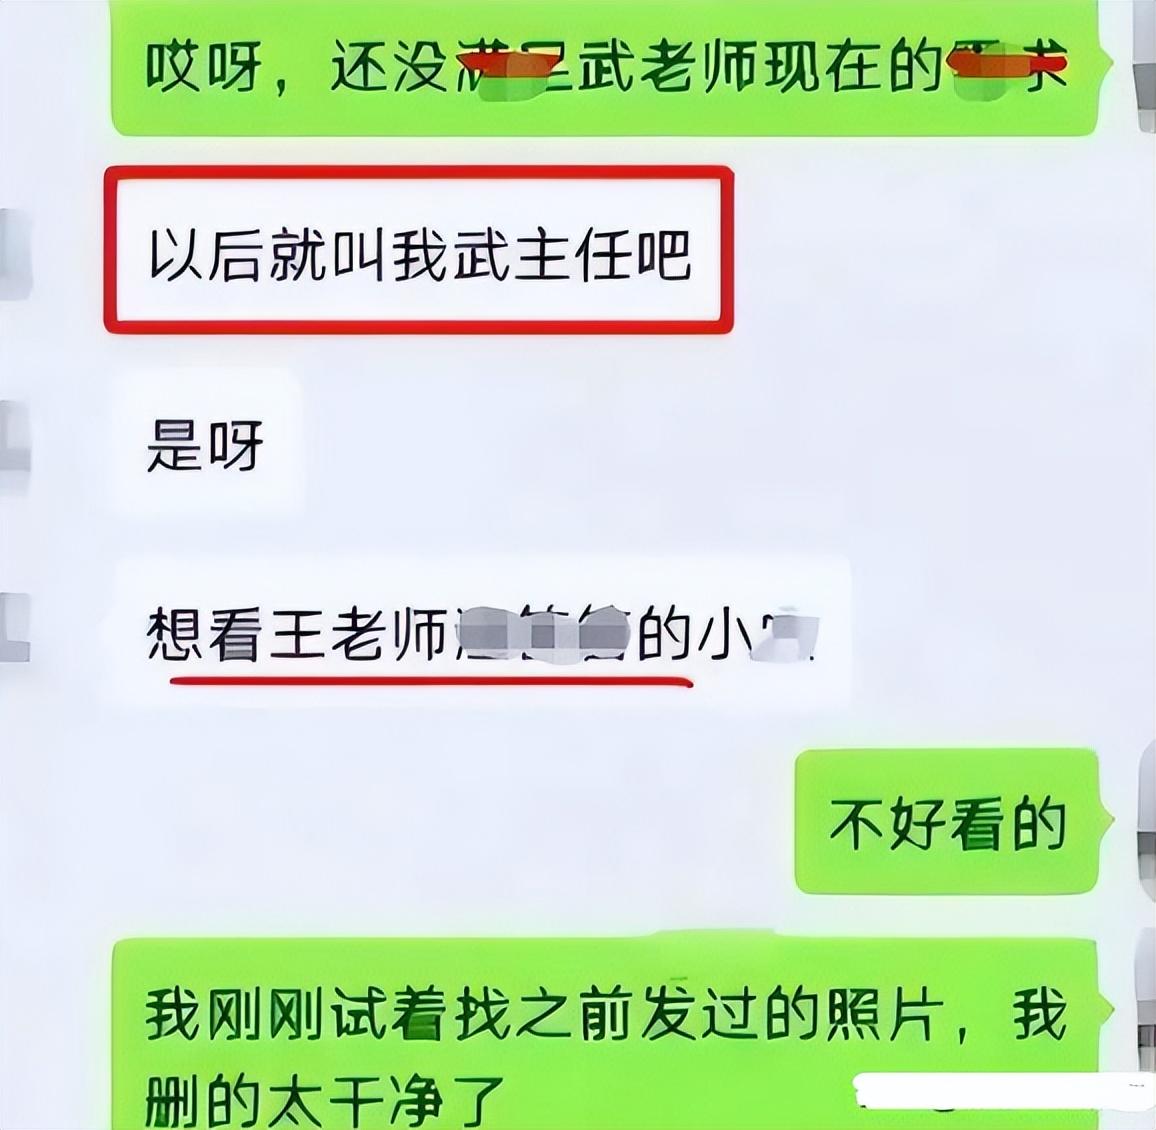 上海女教師出軌16歲男生 當局調查「未停職」登熱搜 法律KOL料「舉報夫」下場最慘？ - 有線寬頻 i-CABLE